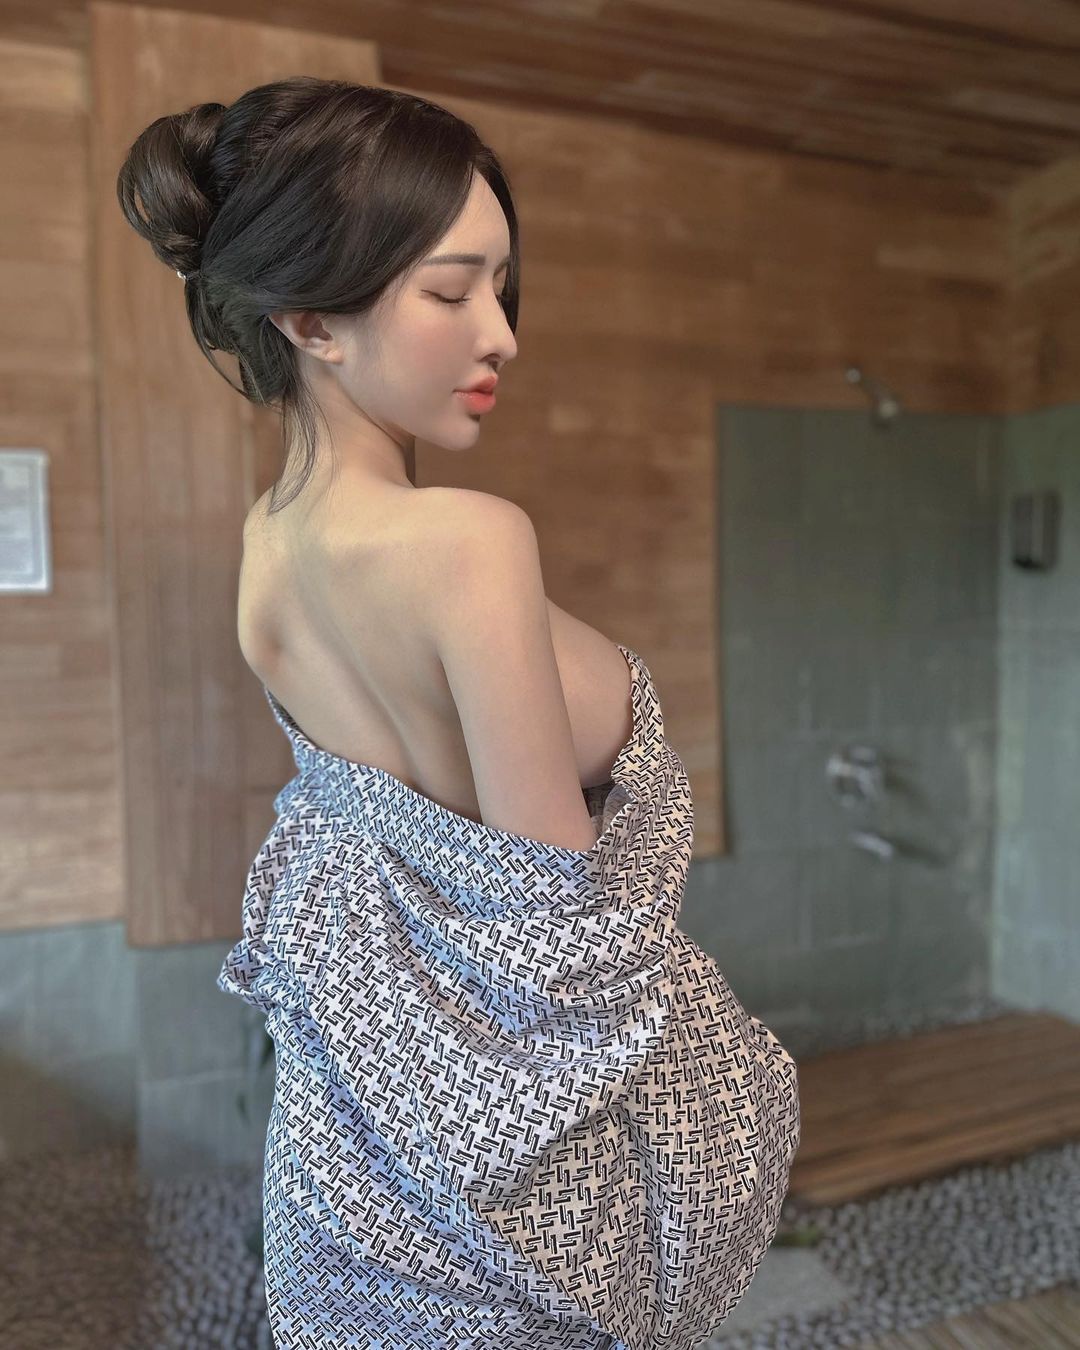 【GG扑克】人間芭比「雲嫣」釋出浴衣辣照　小露香肩和側乳引起粉絲暴動